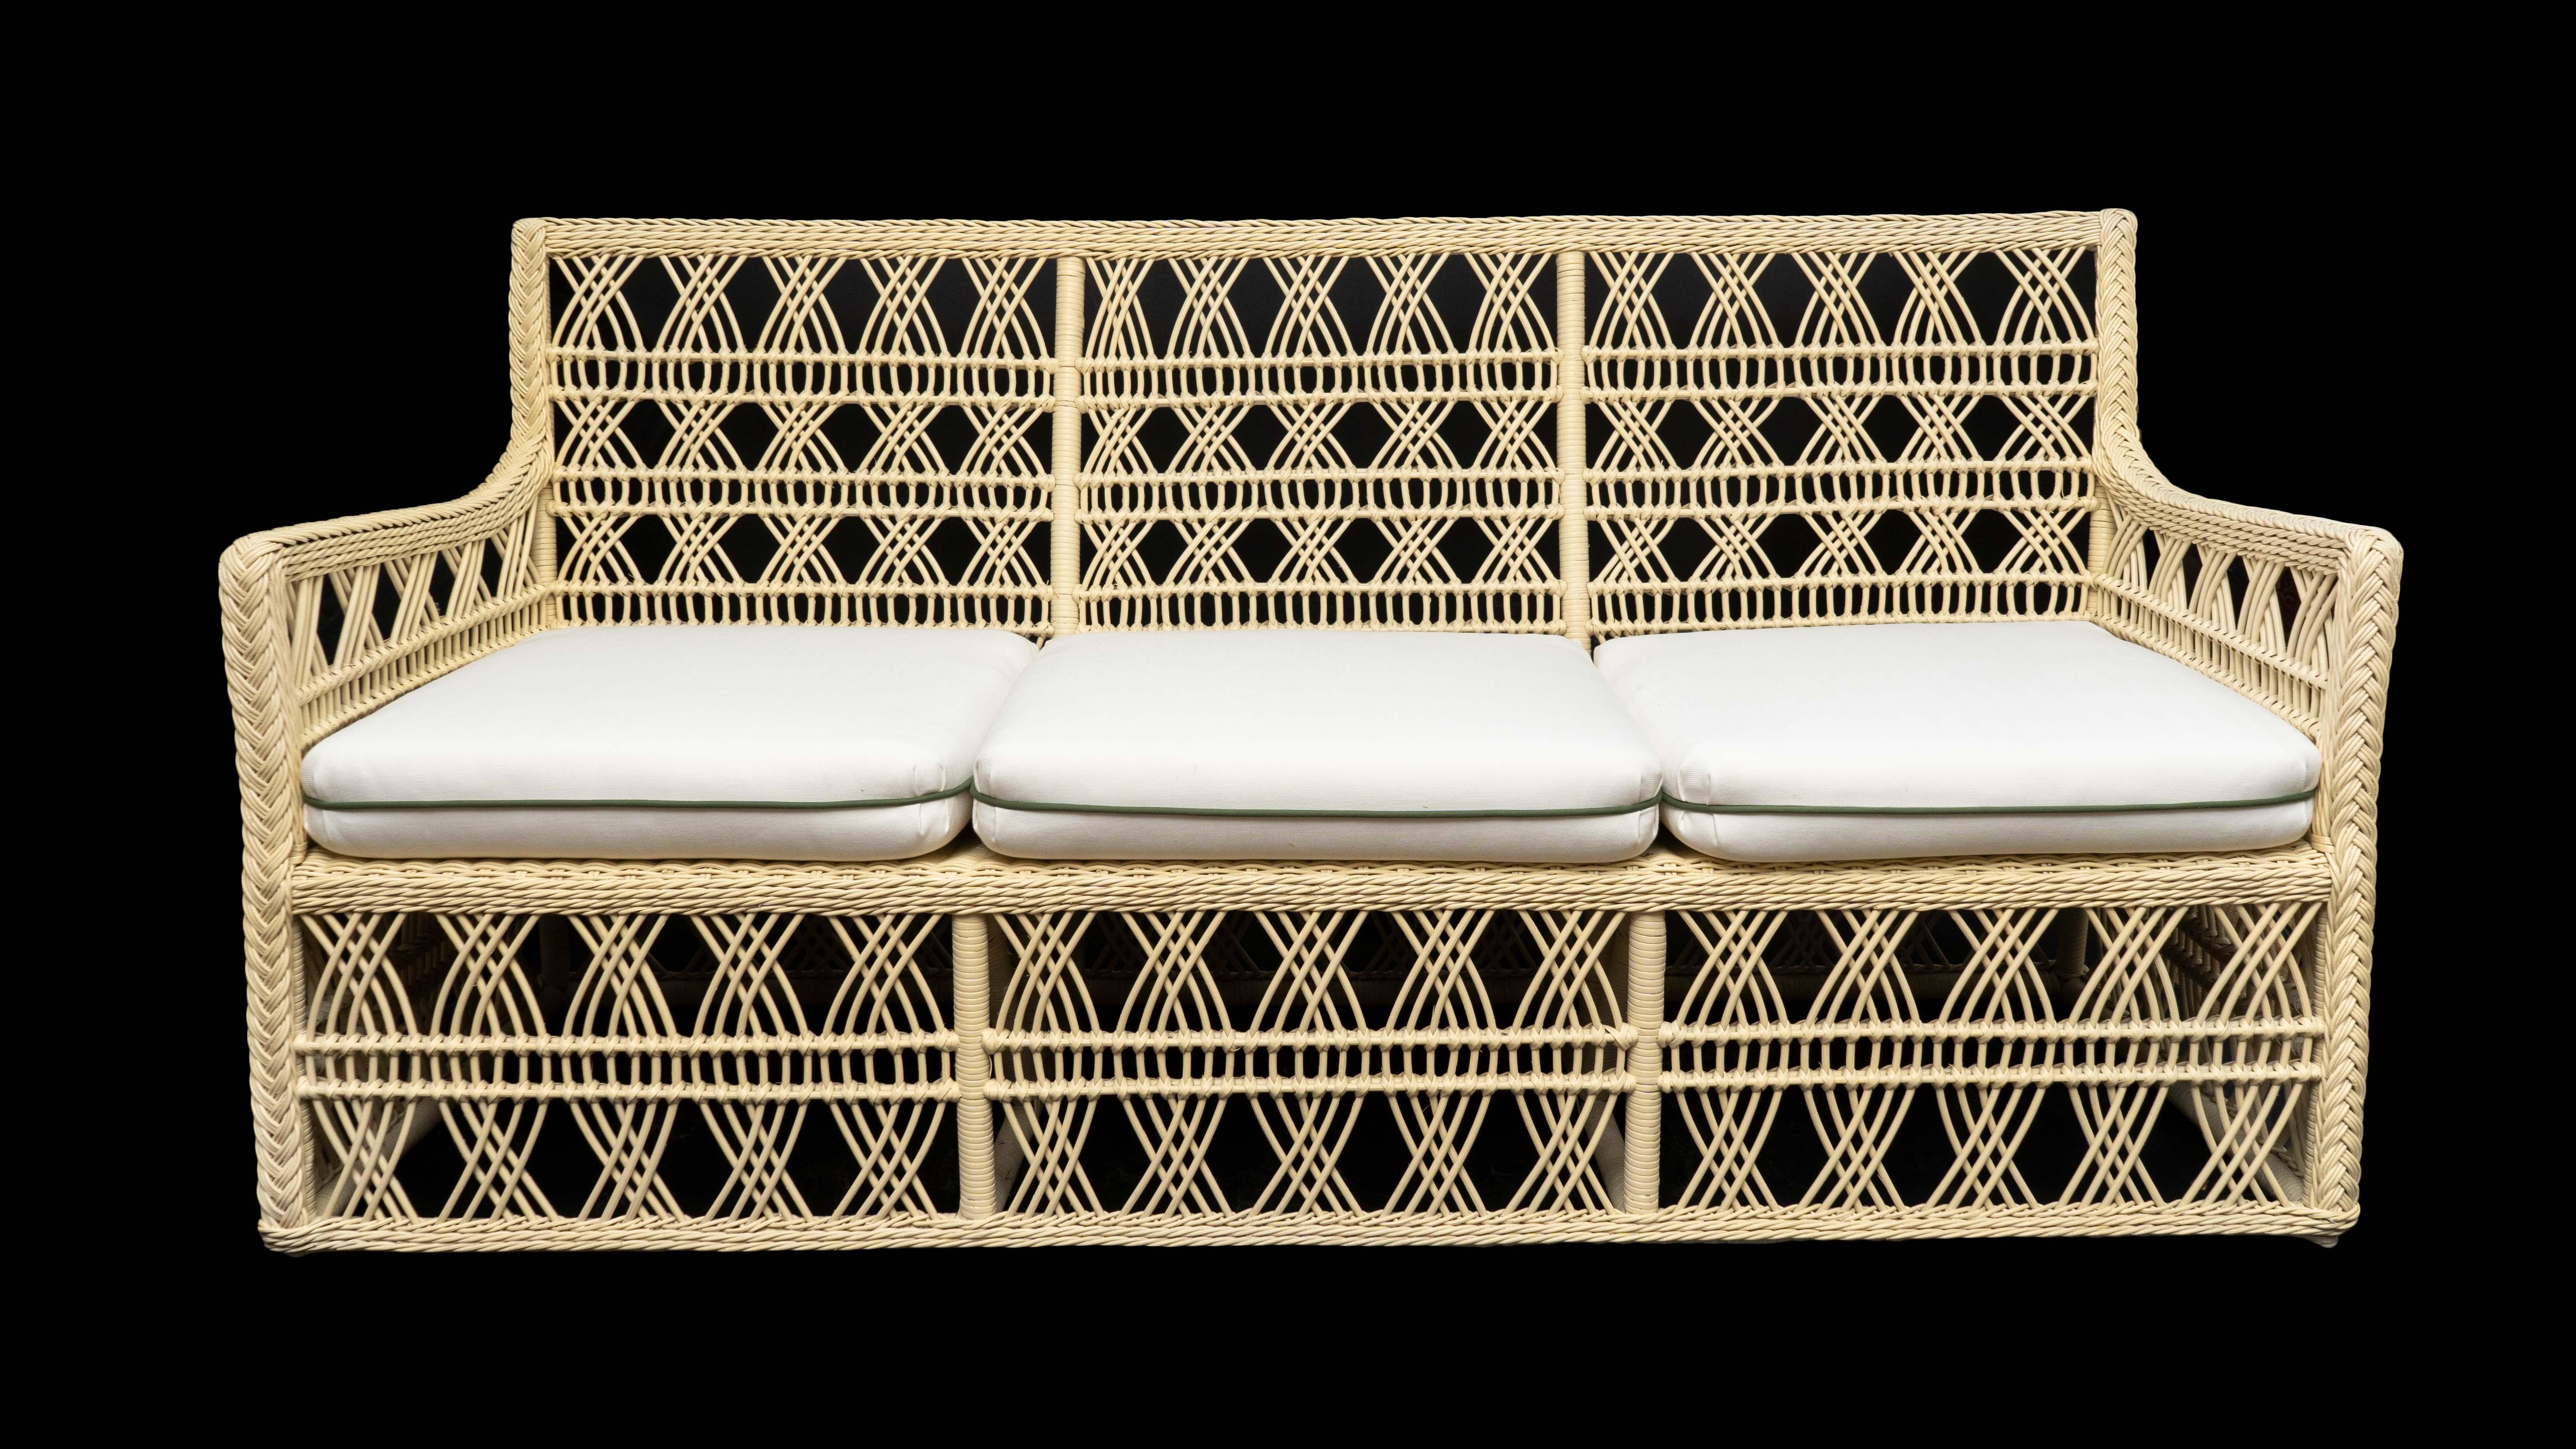 Rattan-Sofa Trellis. Hergestellt für Creel and Gow in Tanger, Marokko.

Maße: 30